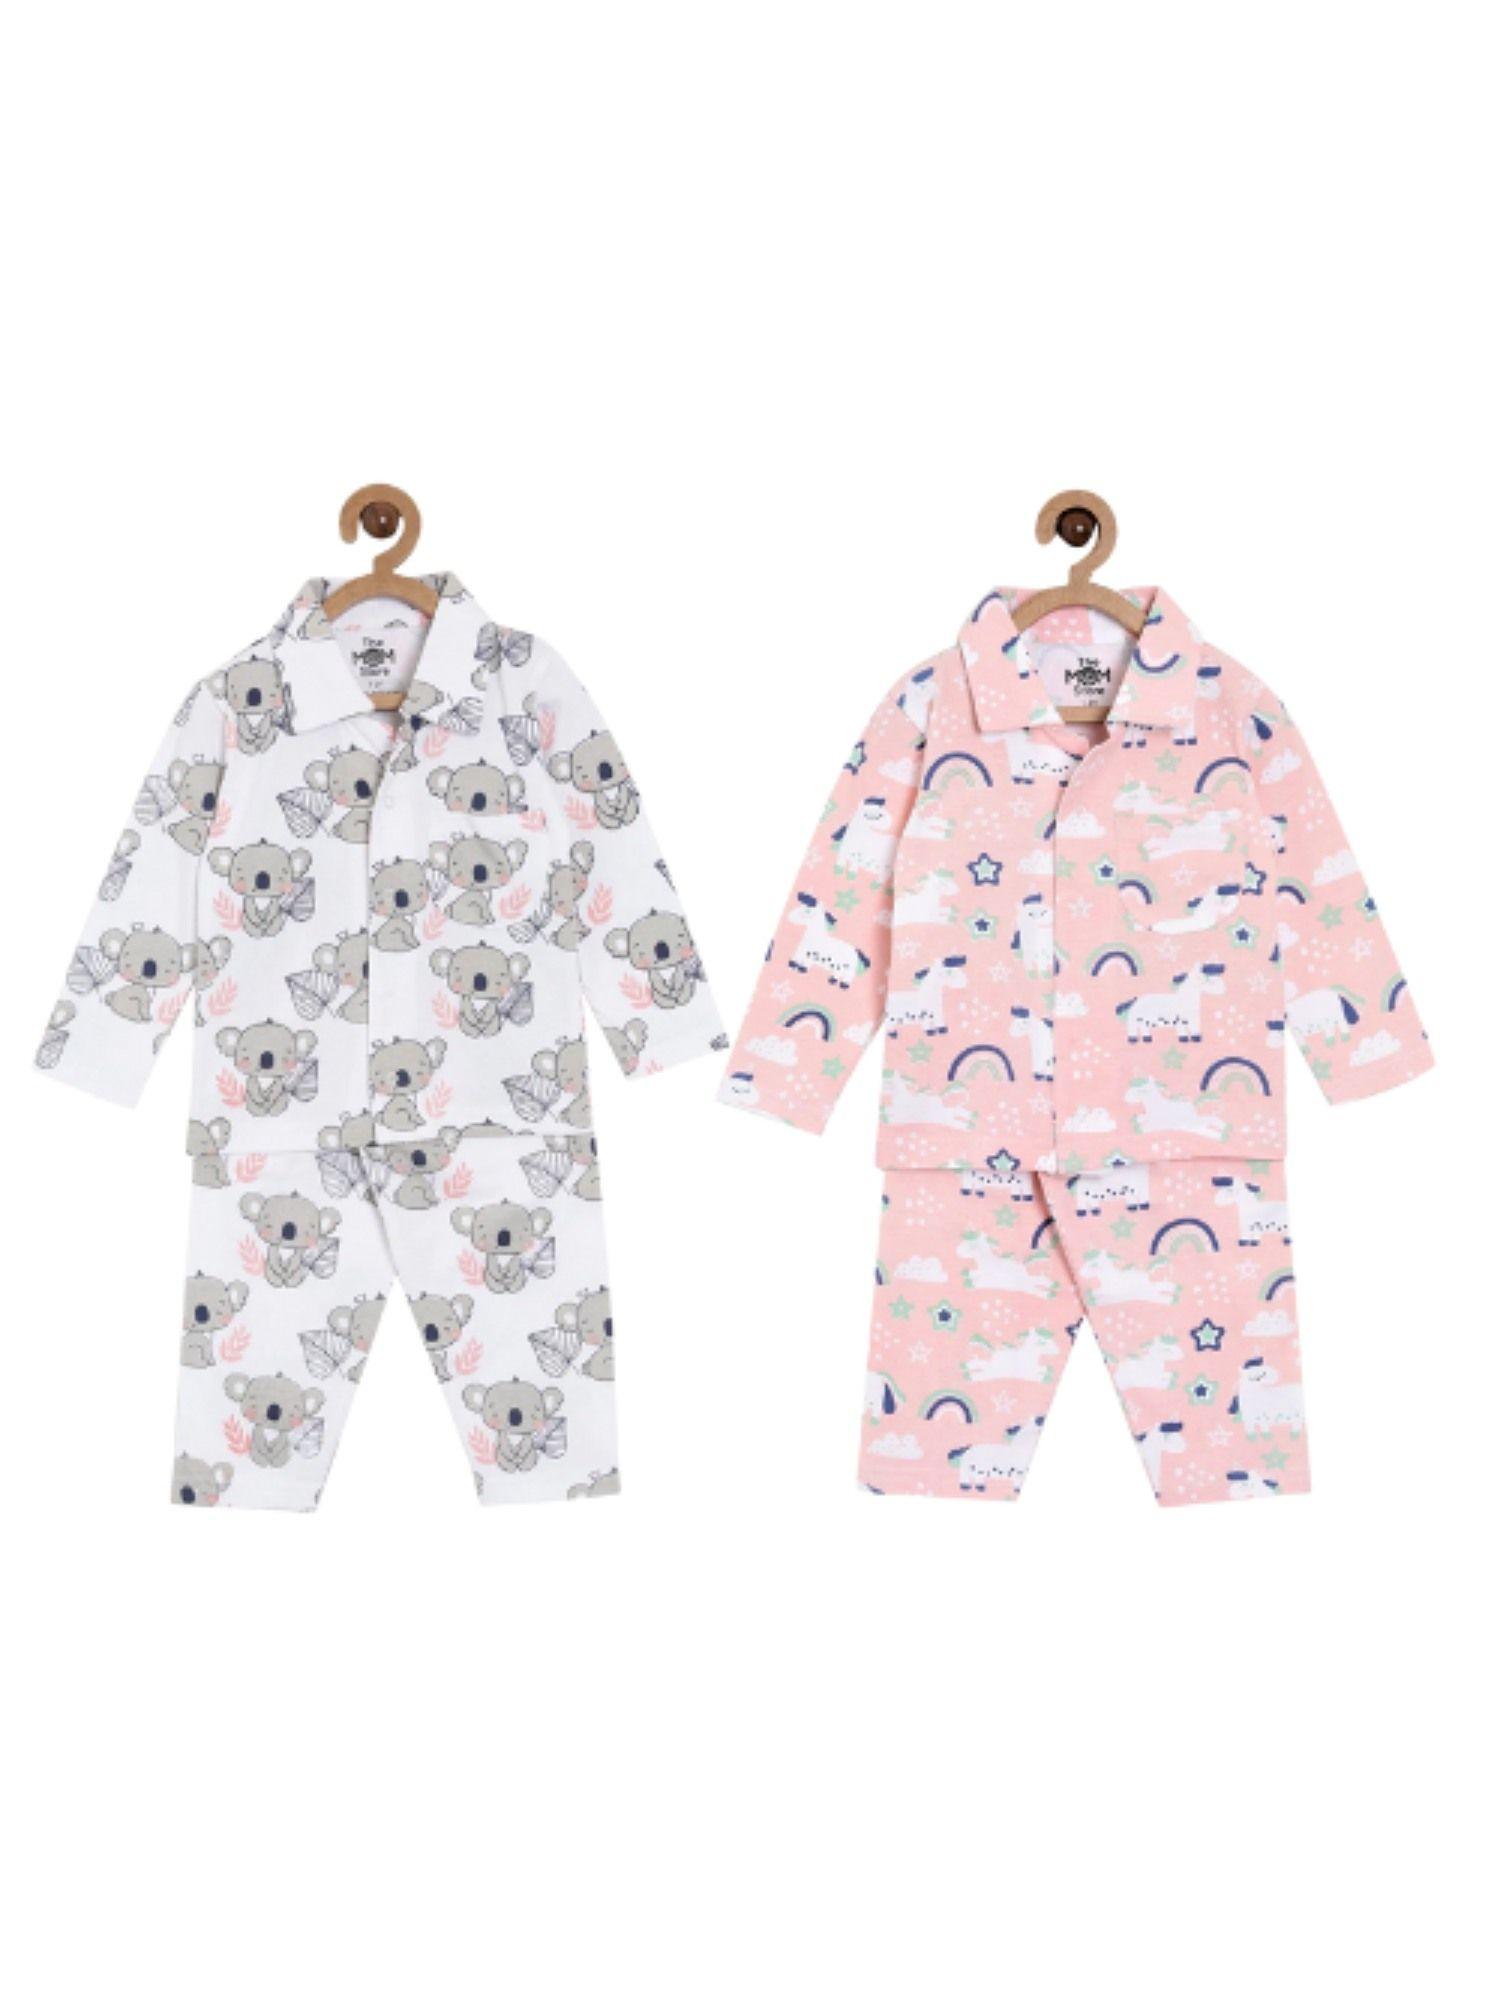 combo of 2 baby pyjama sets - baby koala & magical unicorn (set of 4)